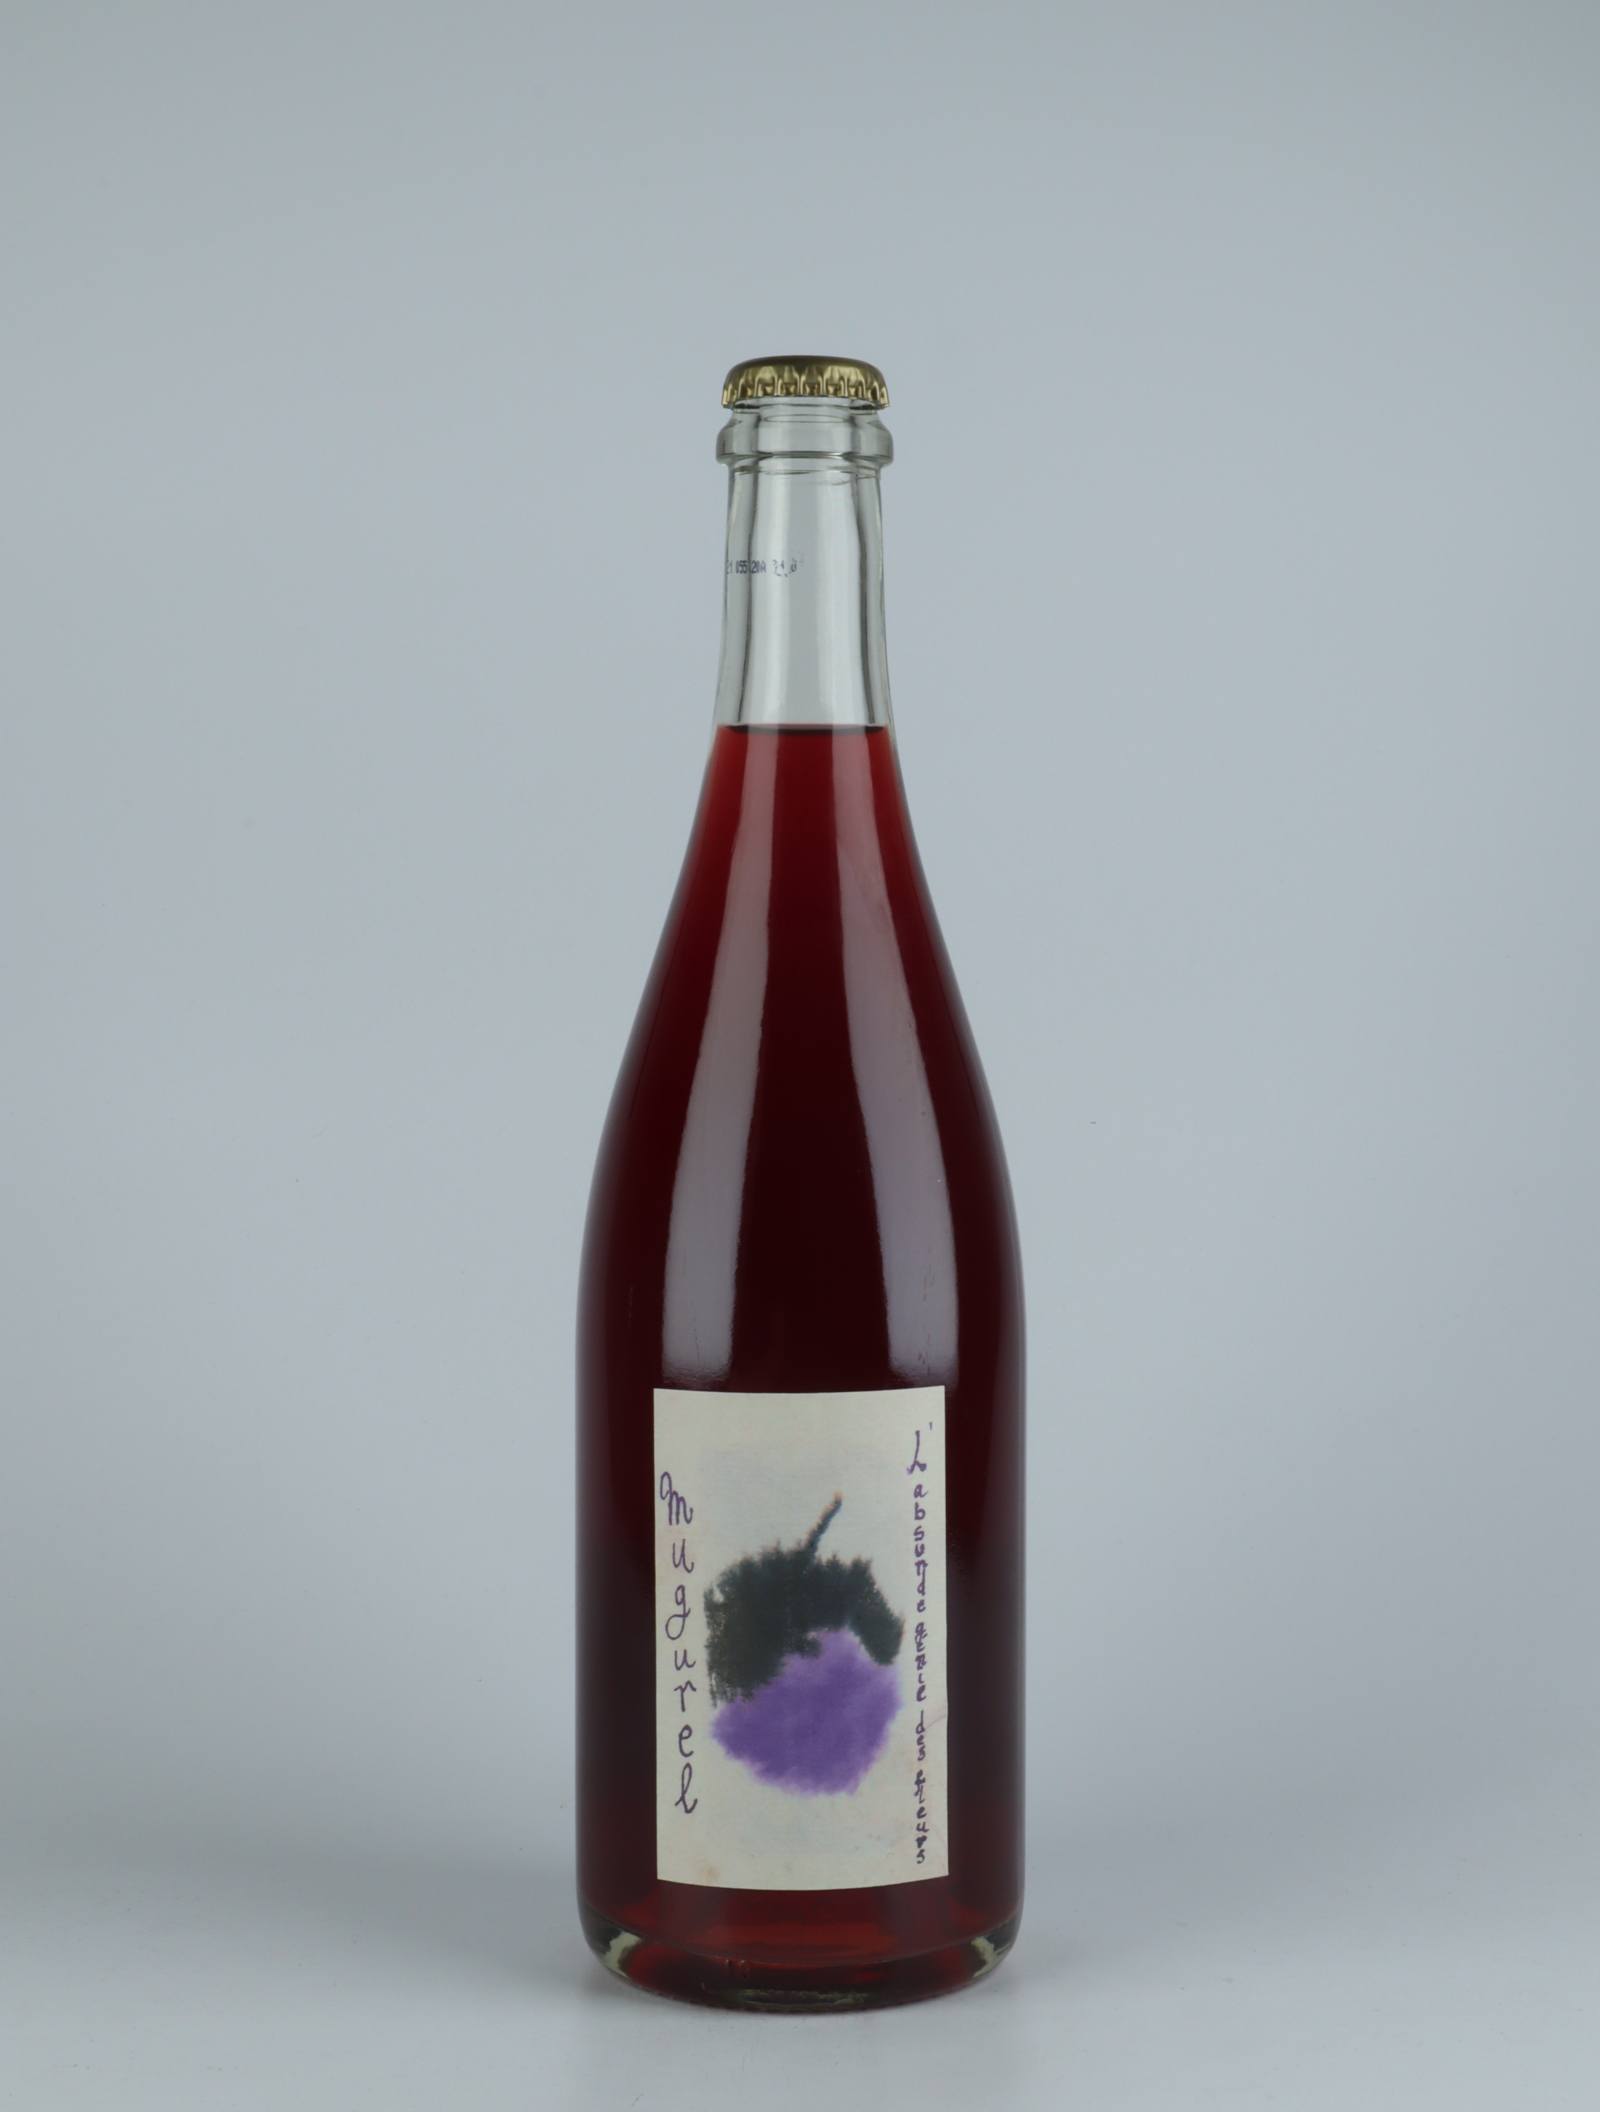 A bottle 2020 Mugurel Rosé from Absurde Génie des Fleurs, Languedoc in France